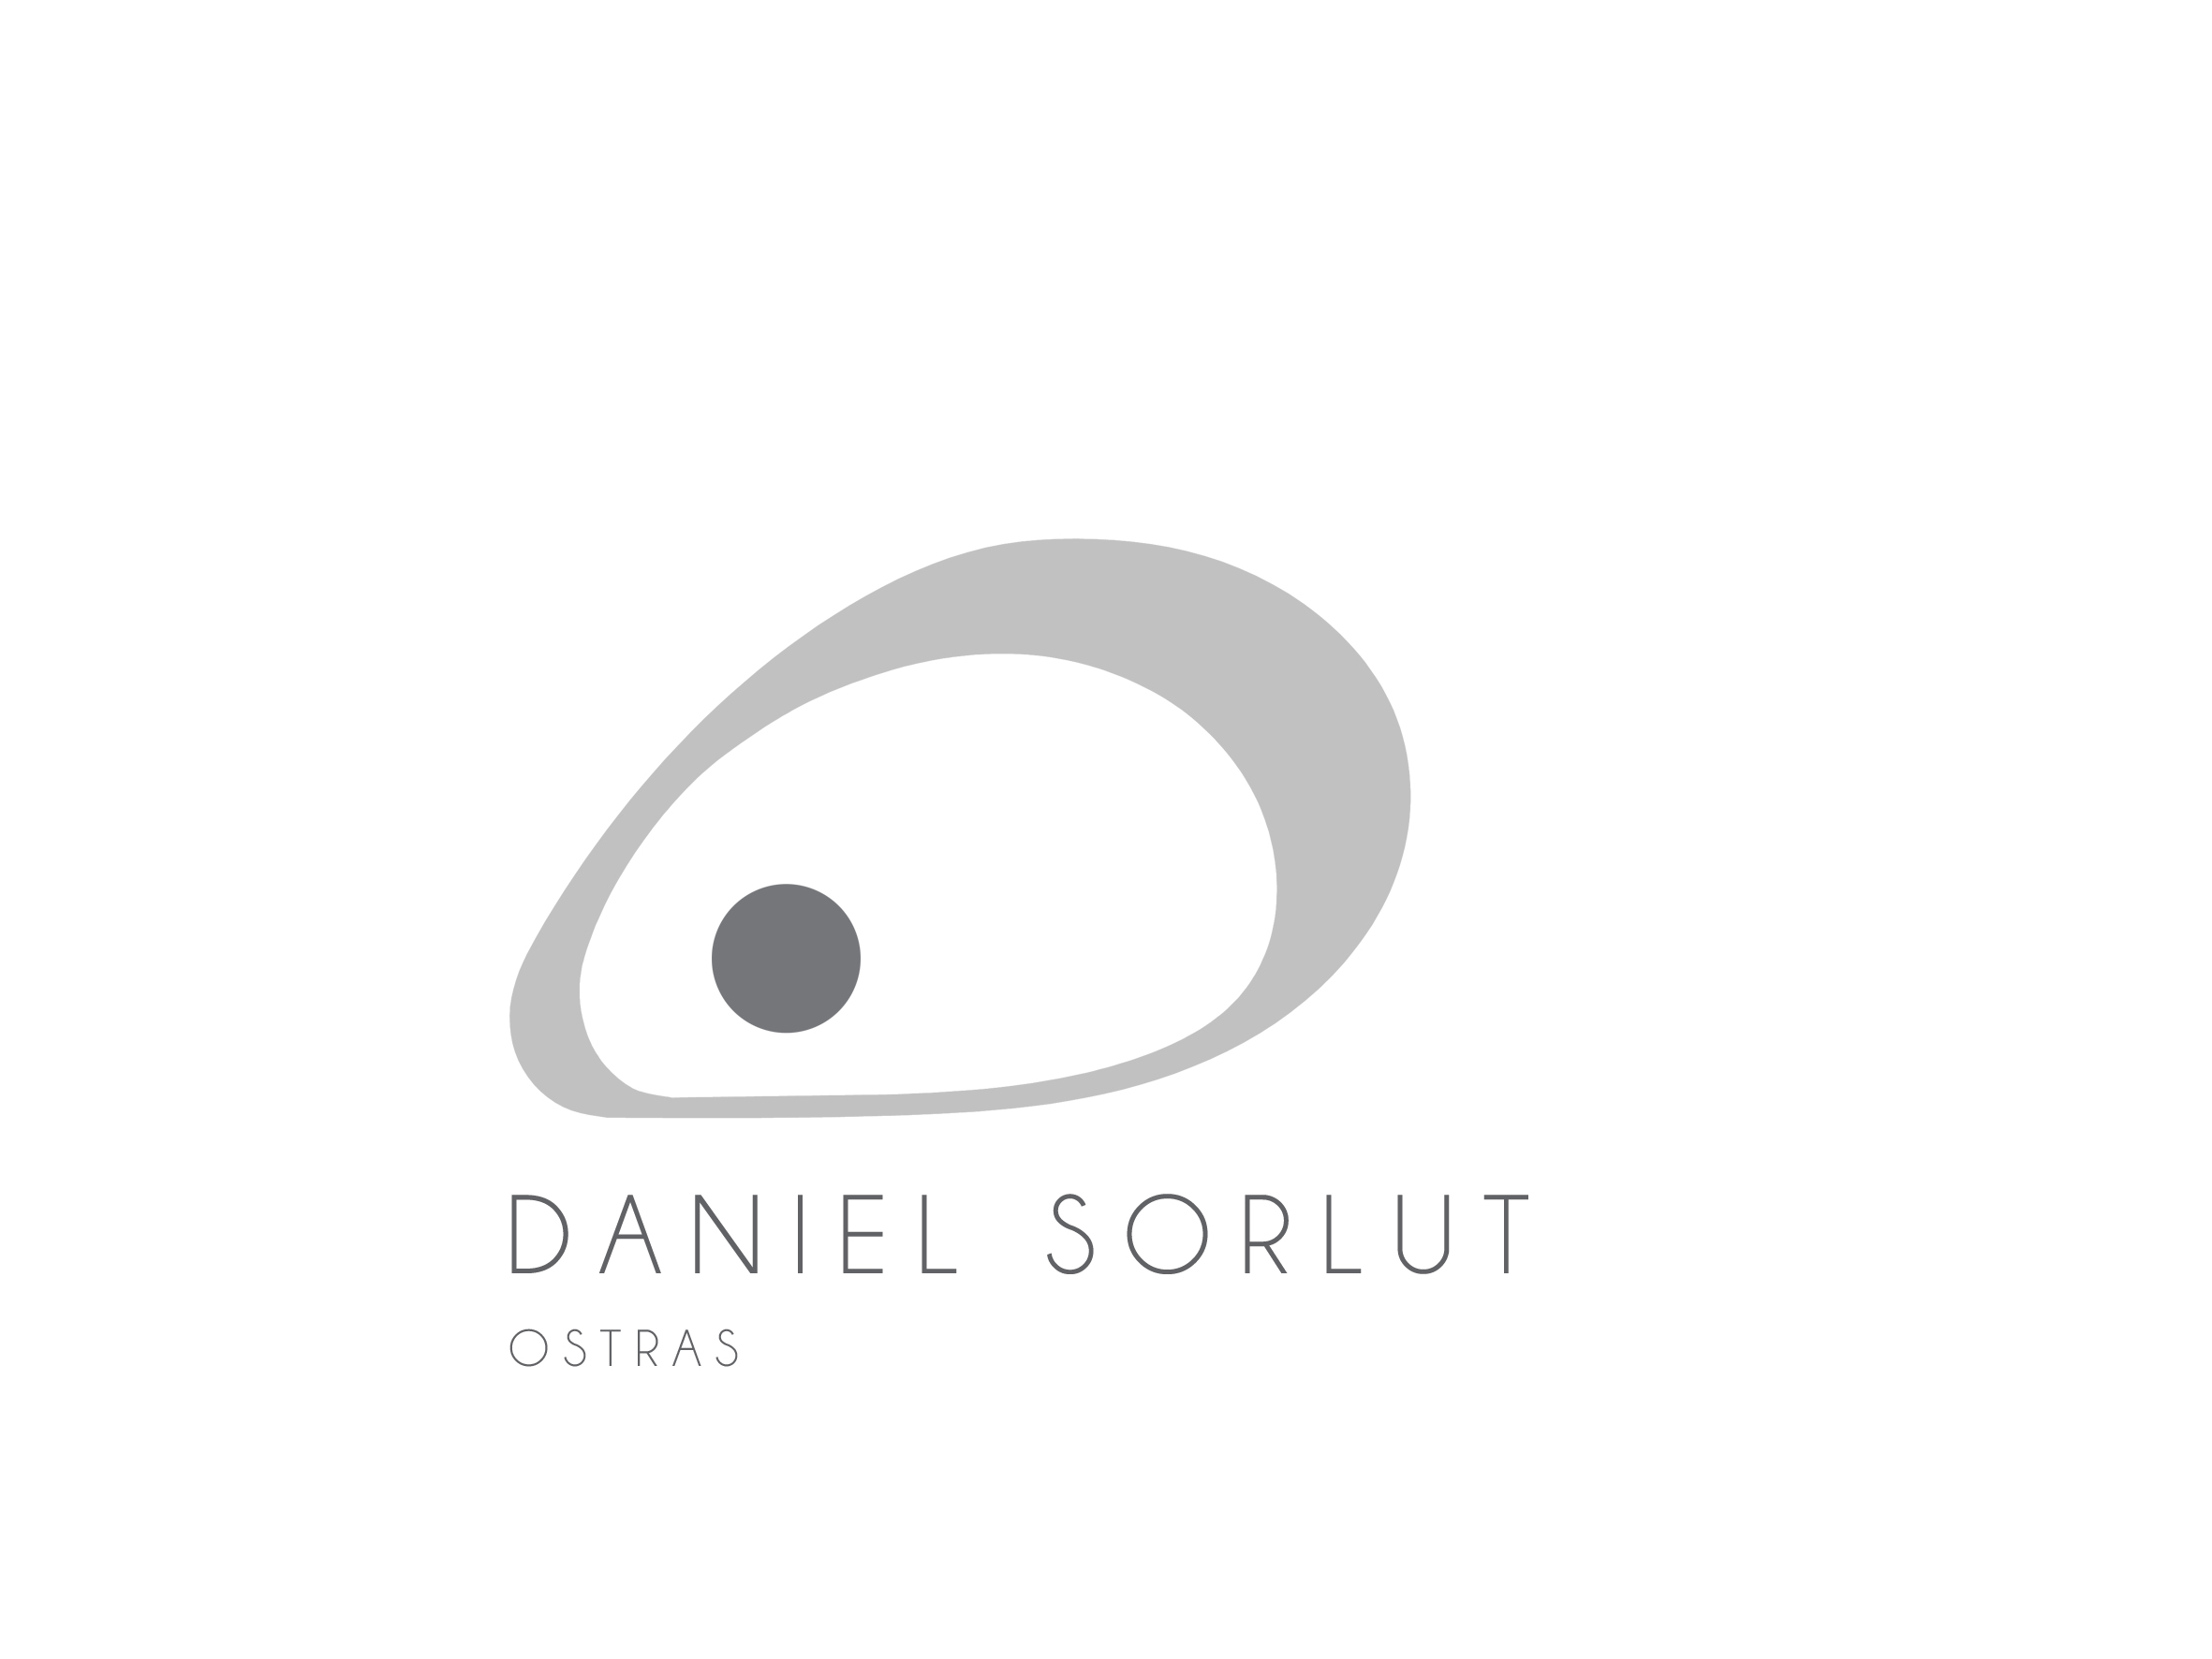 DANIEL SORLUT